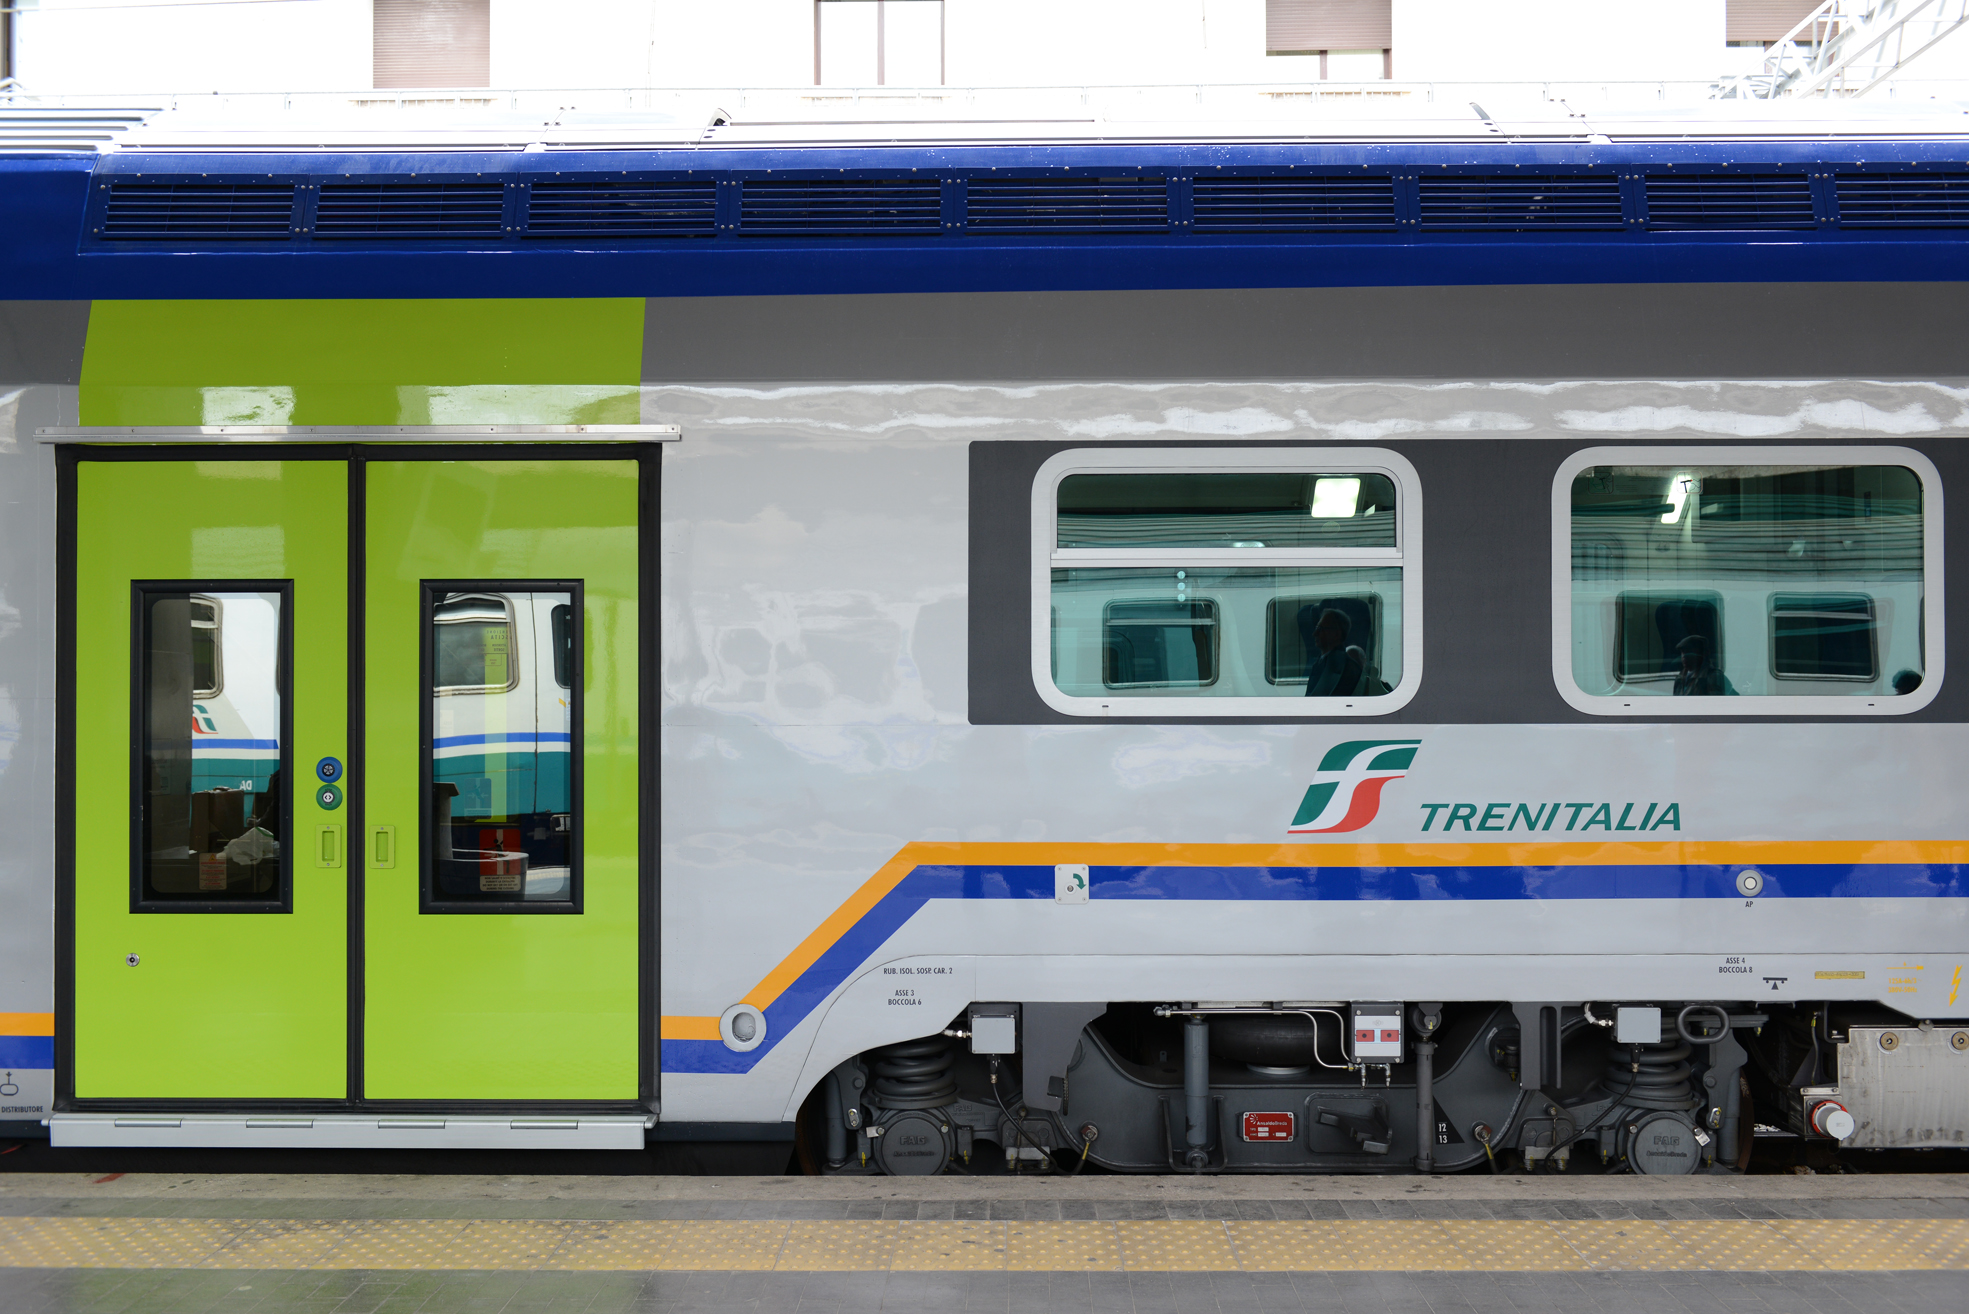 Treno regionale nella nuova livrea Trenitalia - Foto Gruppo Ferrovie dello Stato Italiane